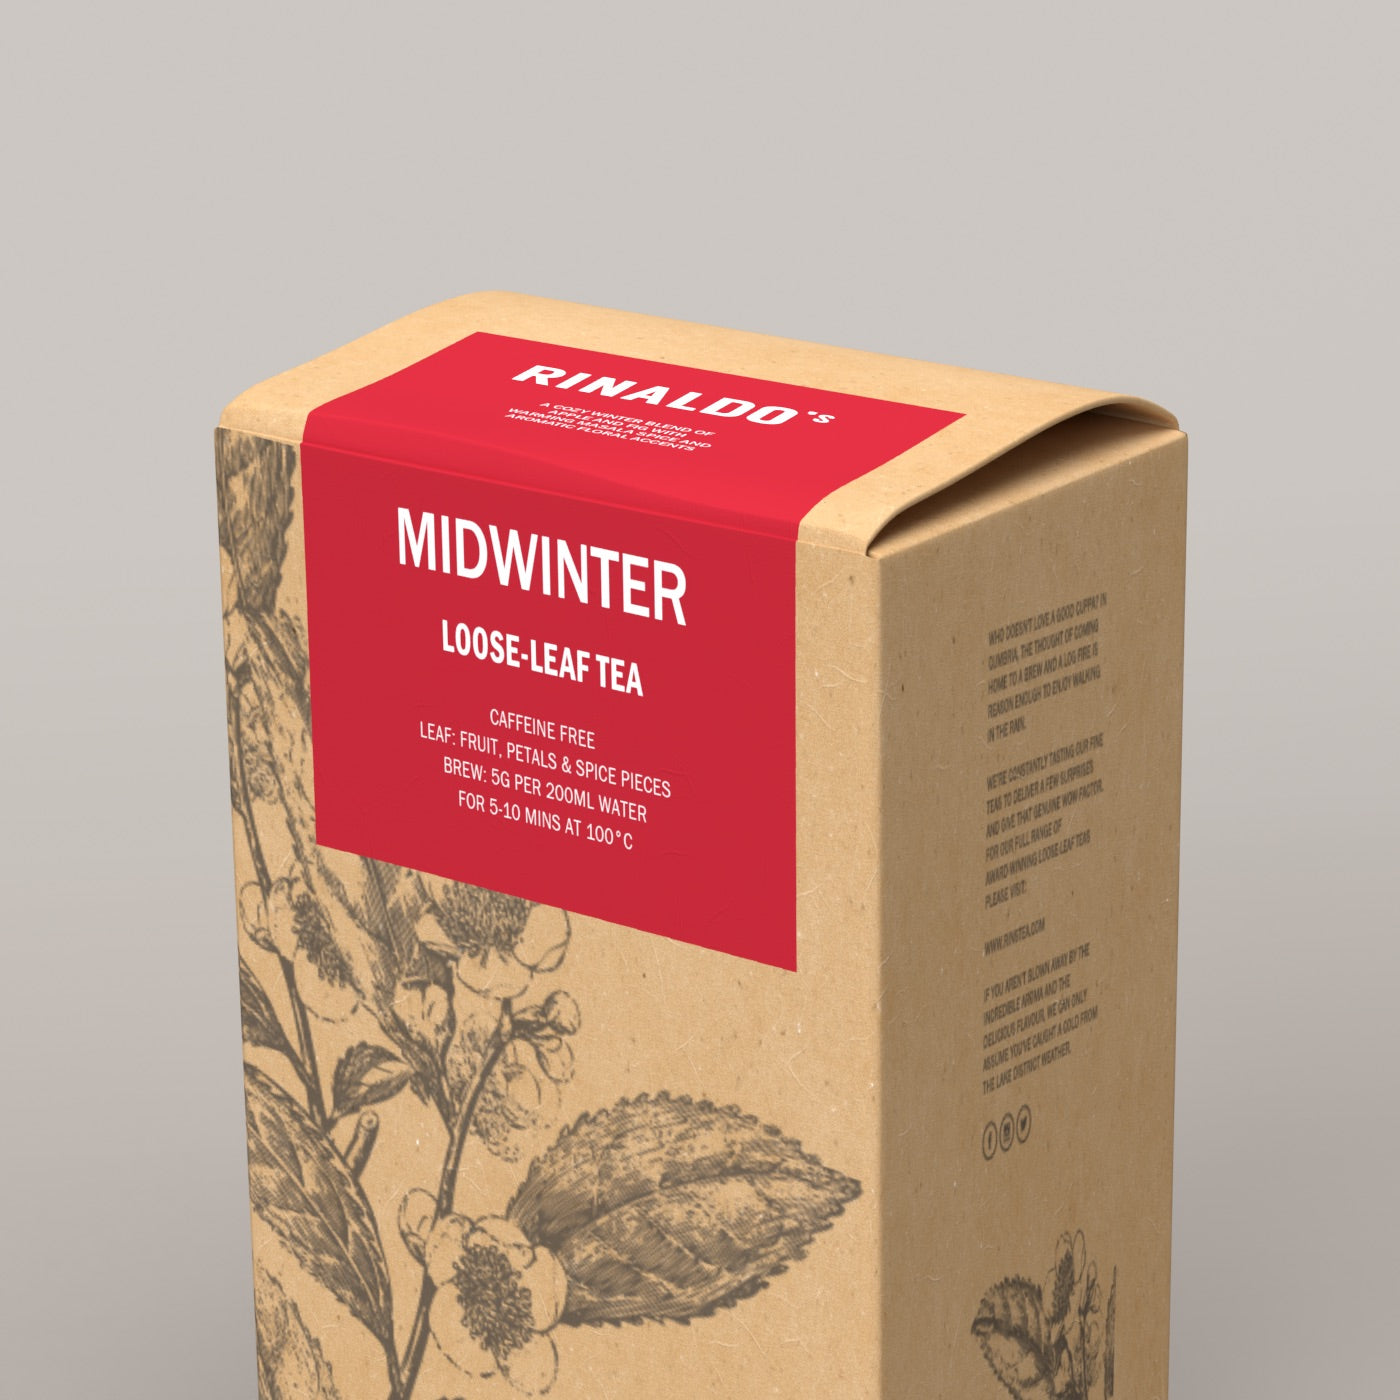 Midwinter Tea